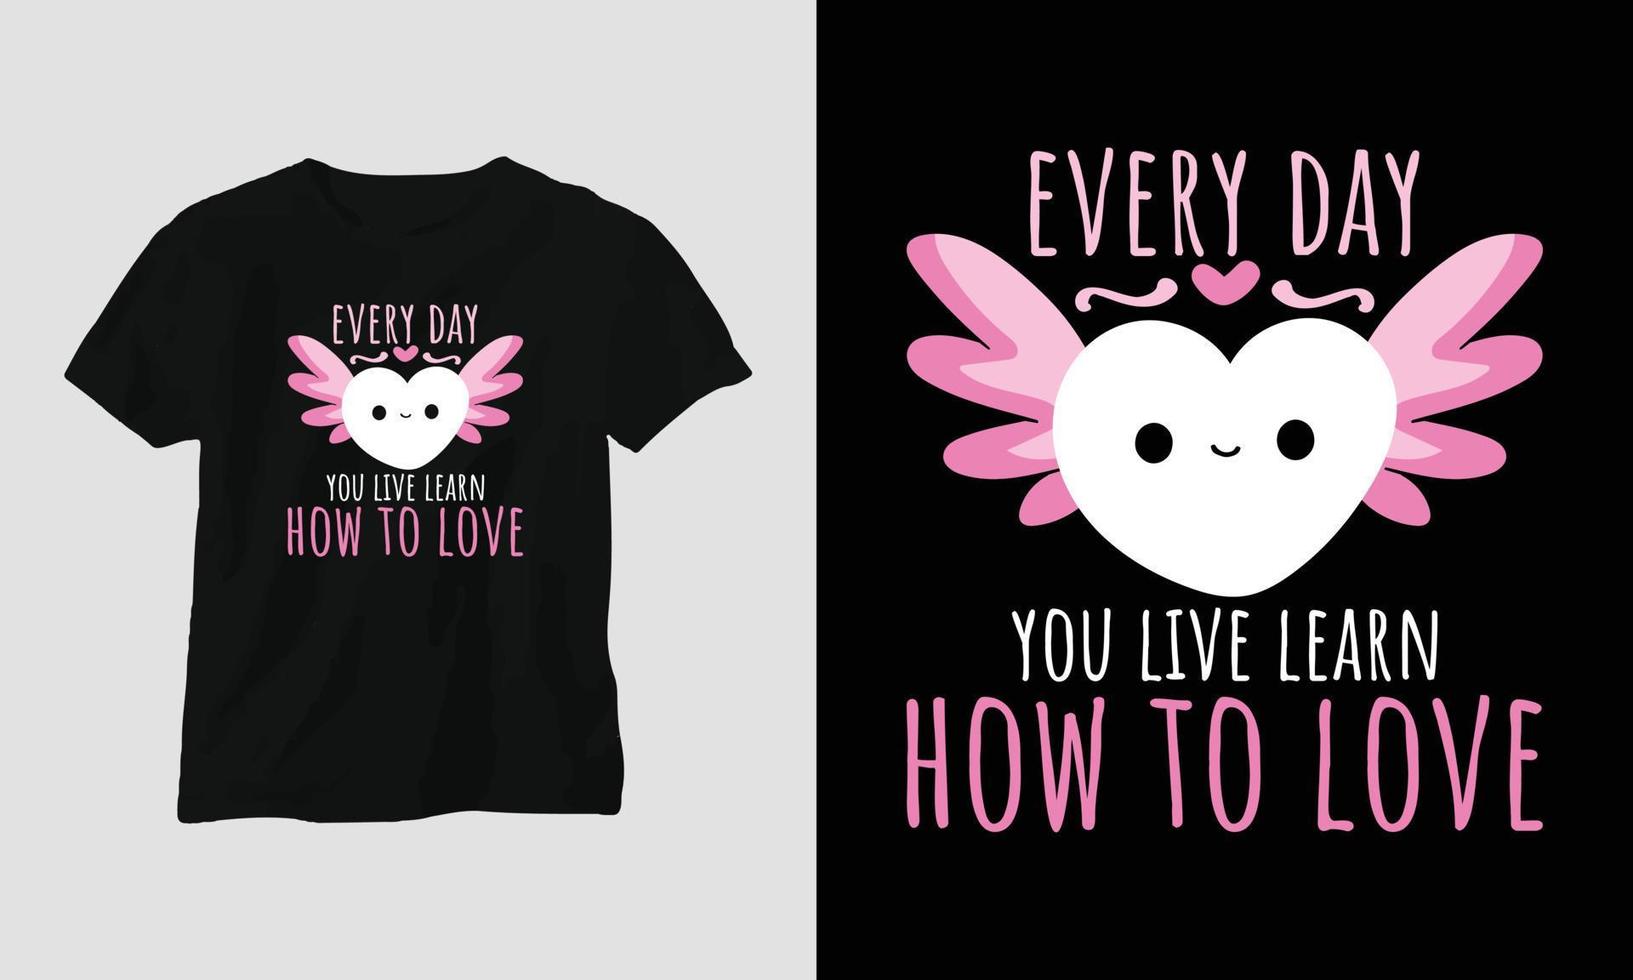 Jeden Tag, an dem Sie leben, lernen Sie, wie man liebt - Valentinstag-Typografie-T-Shirt-Design mit Herz, Katze und motivierenden Zitaten vektor